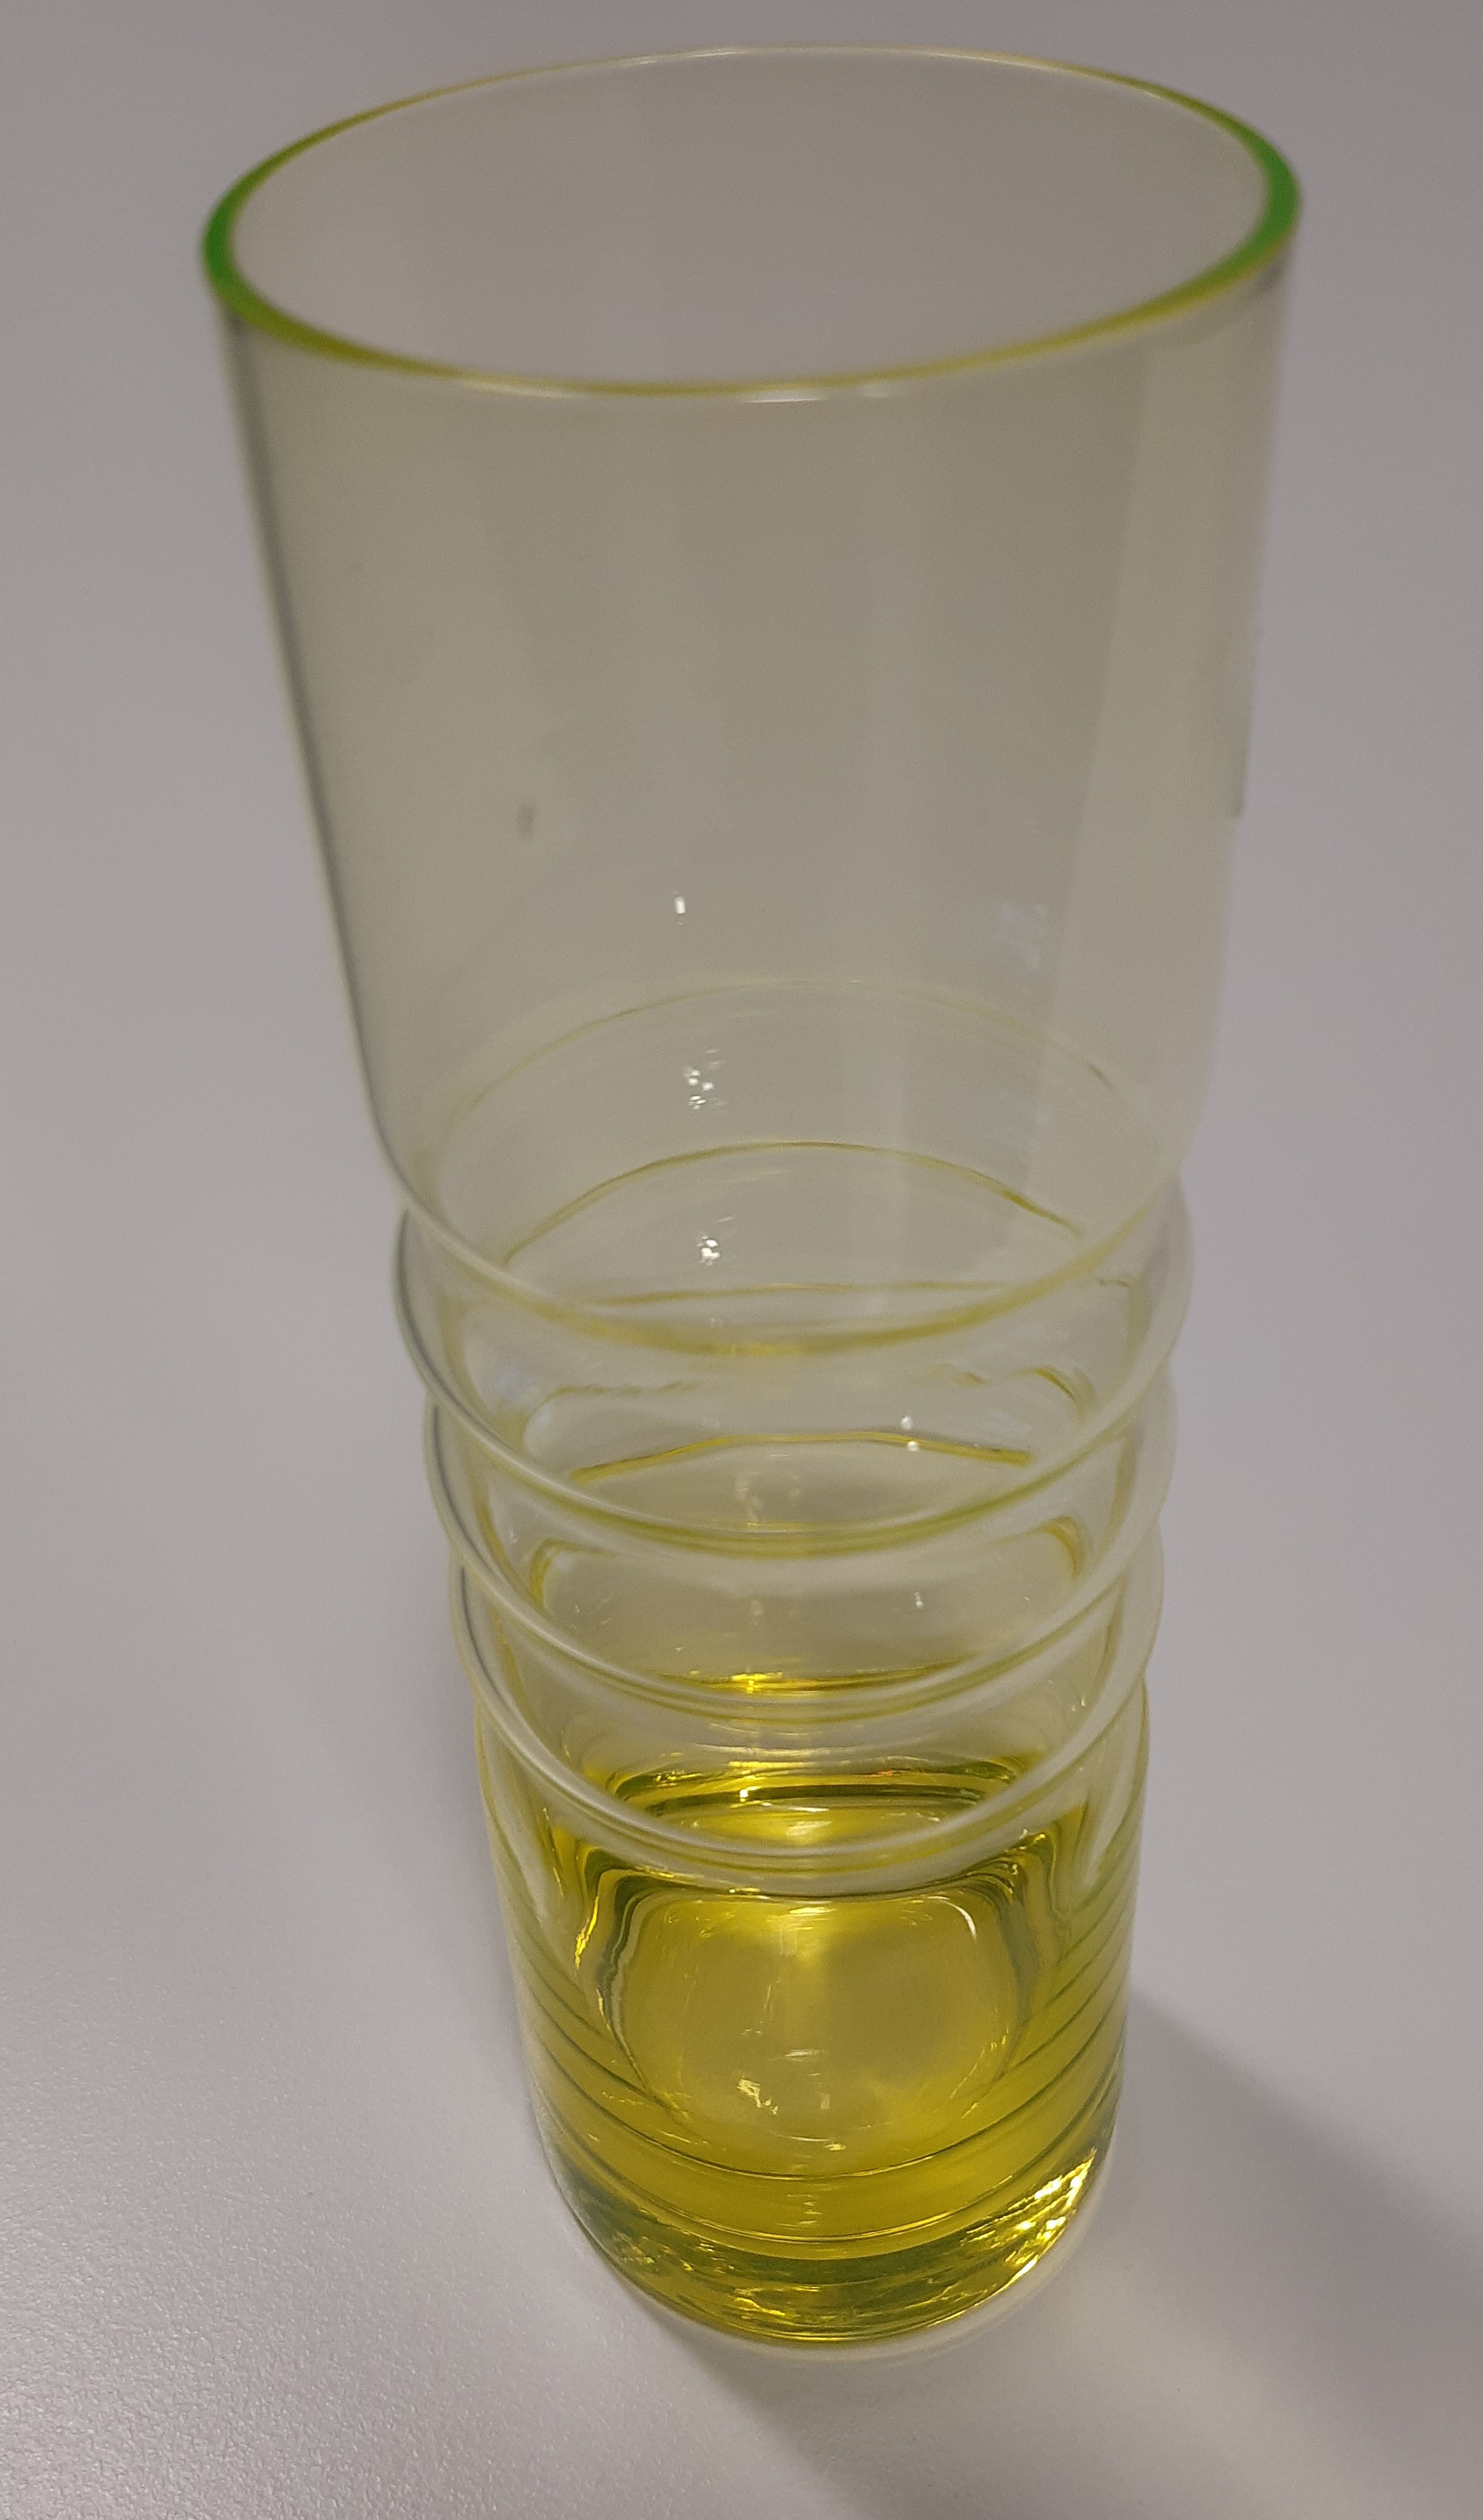 Suomessa 1960-luvulla tehty keramiikkalautanen, jonka pintaväri on saatu käyttämällä pinnoitteessa uraanipitoista suolaa. Lasimaljakon keltainen väri on peräisin uraanista. Uraanilasi hohtaa valaistuna UV-valolla.